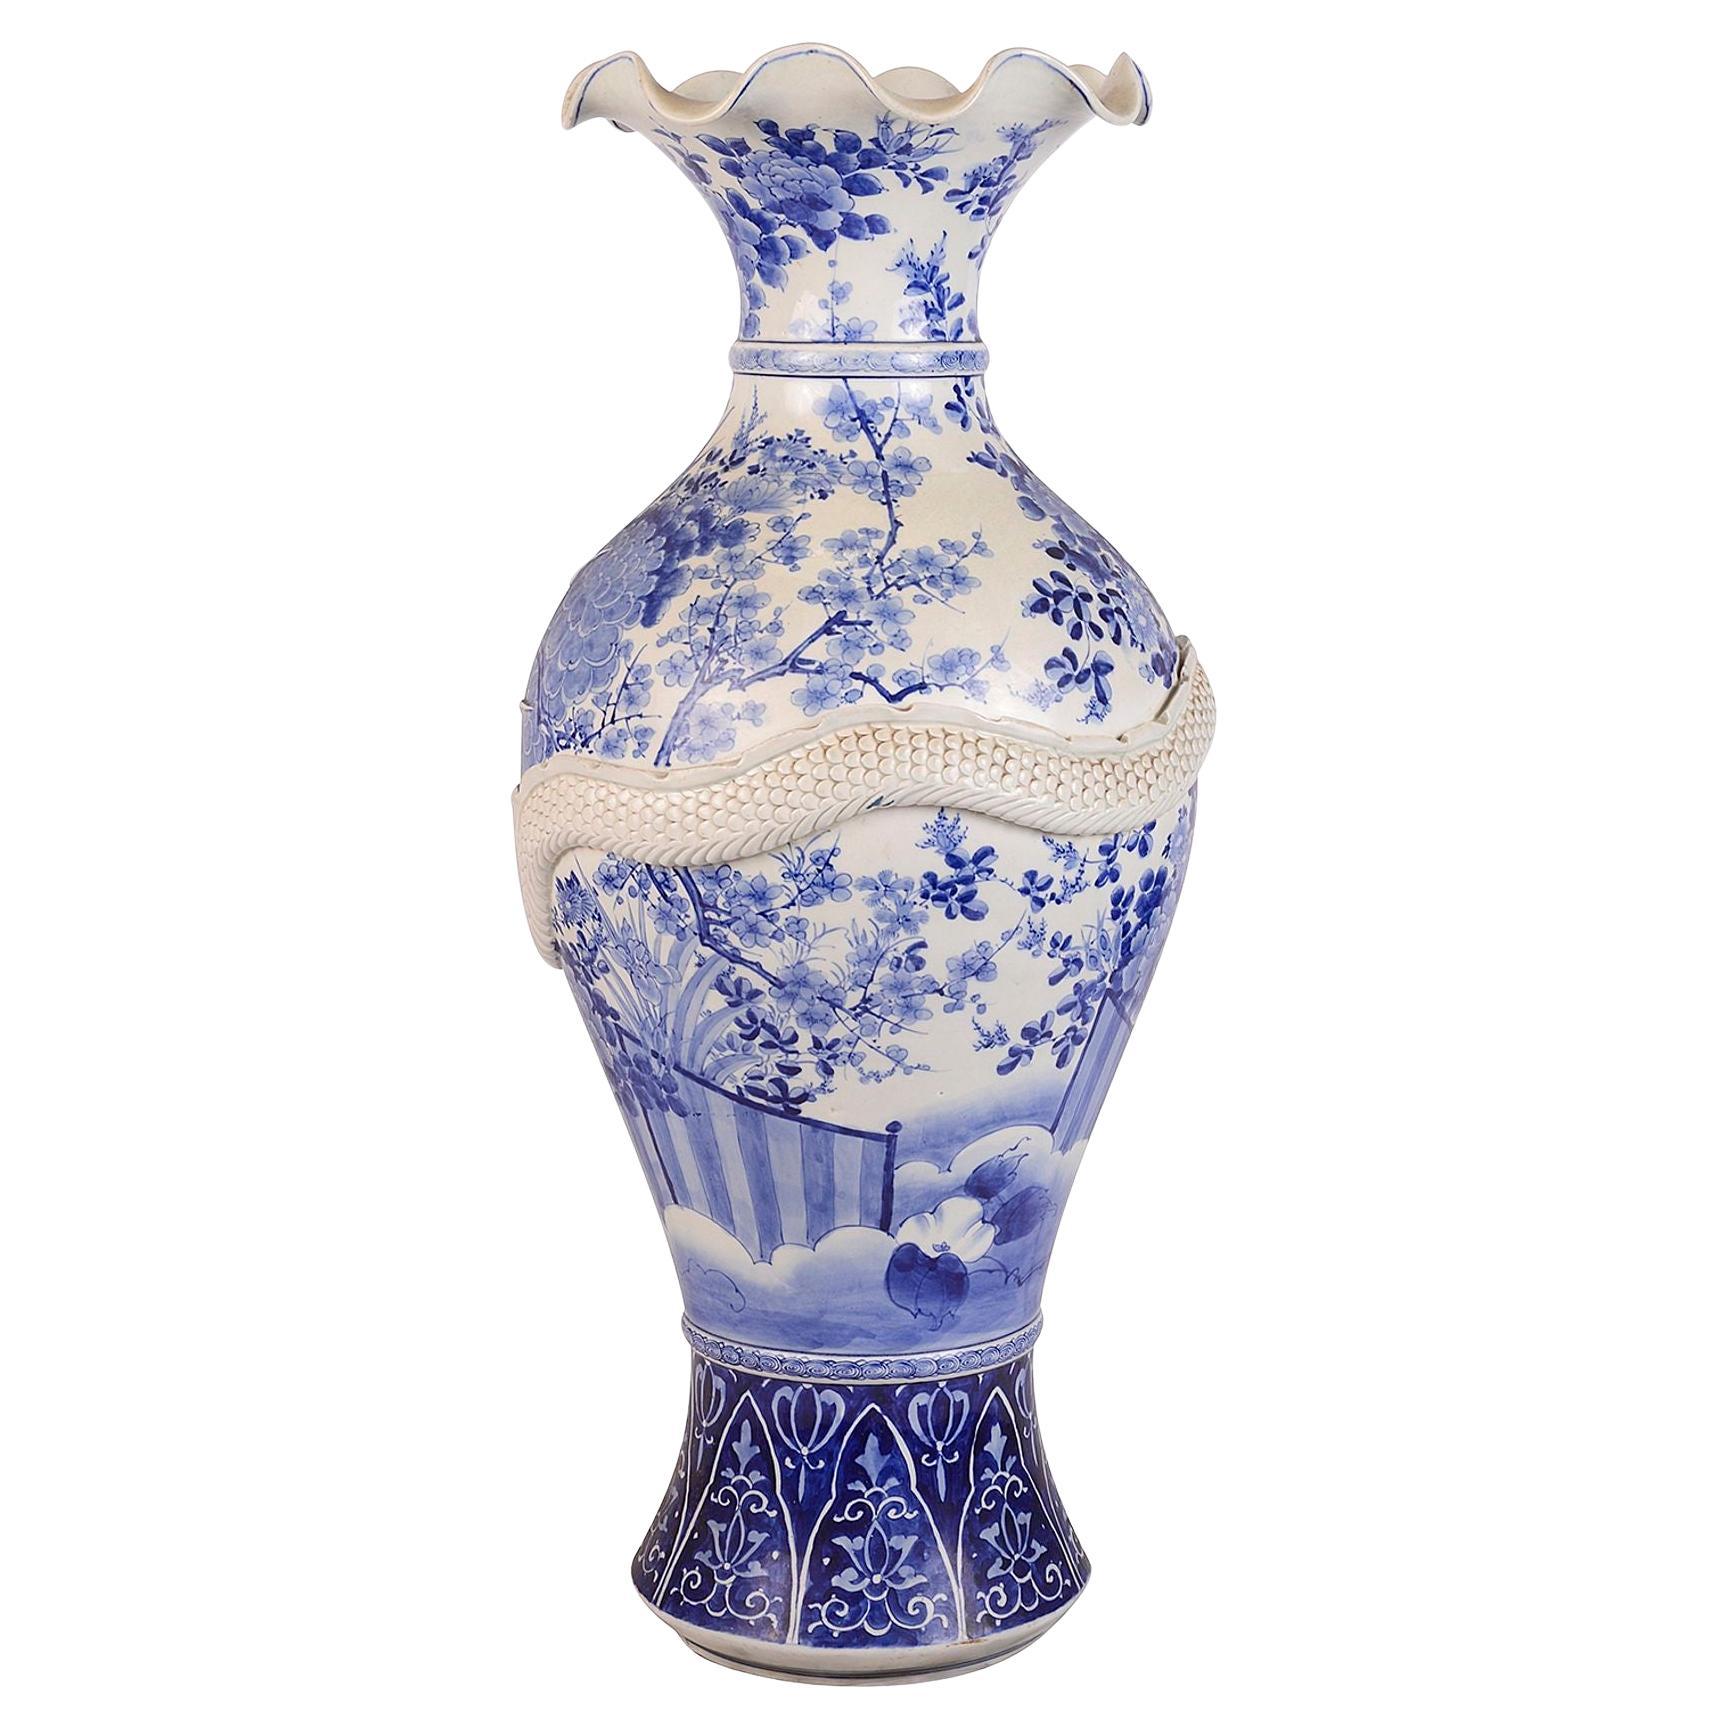 Large 19th Century Japanese Blue and White Vase